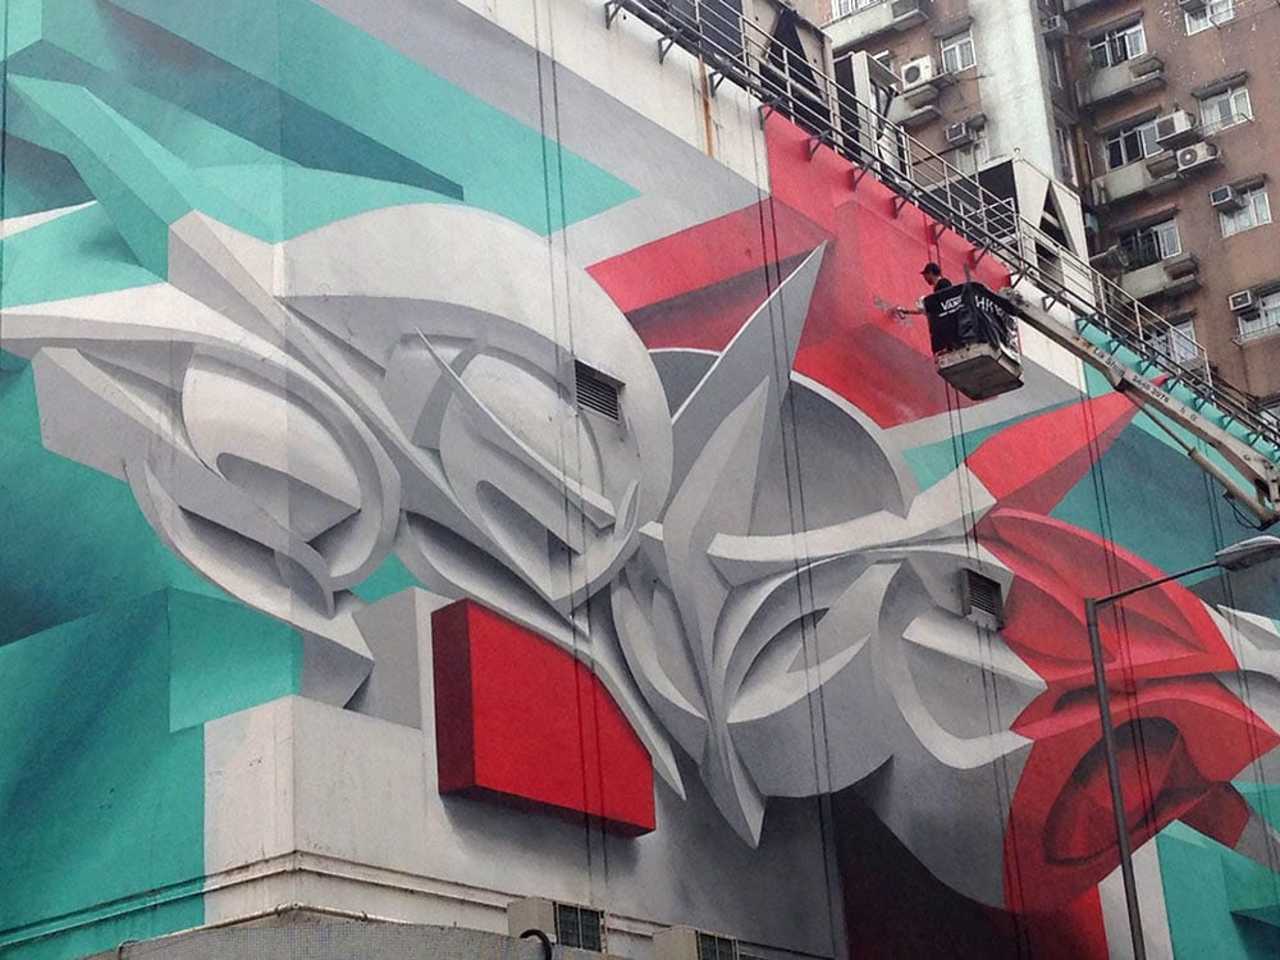 A New 3D Graffiti Mural in Hong Kong by Peeta